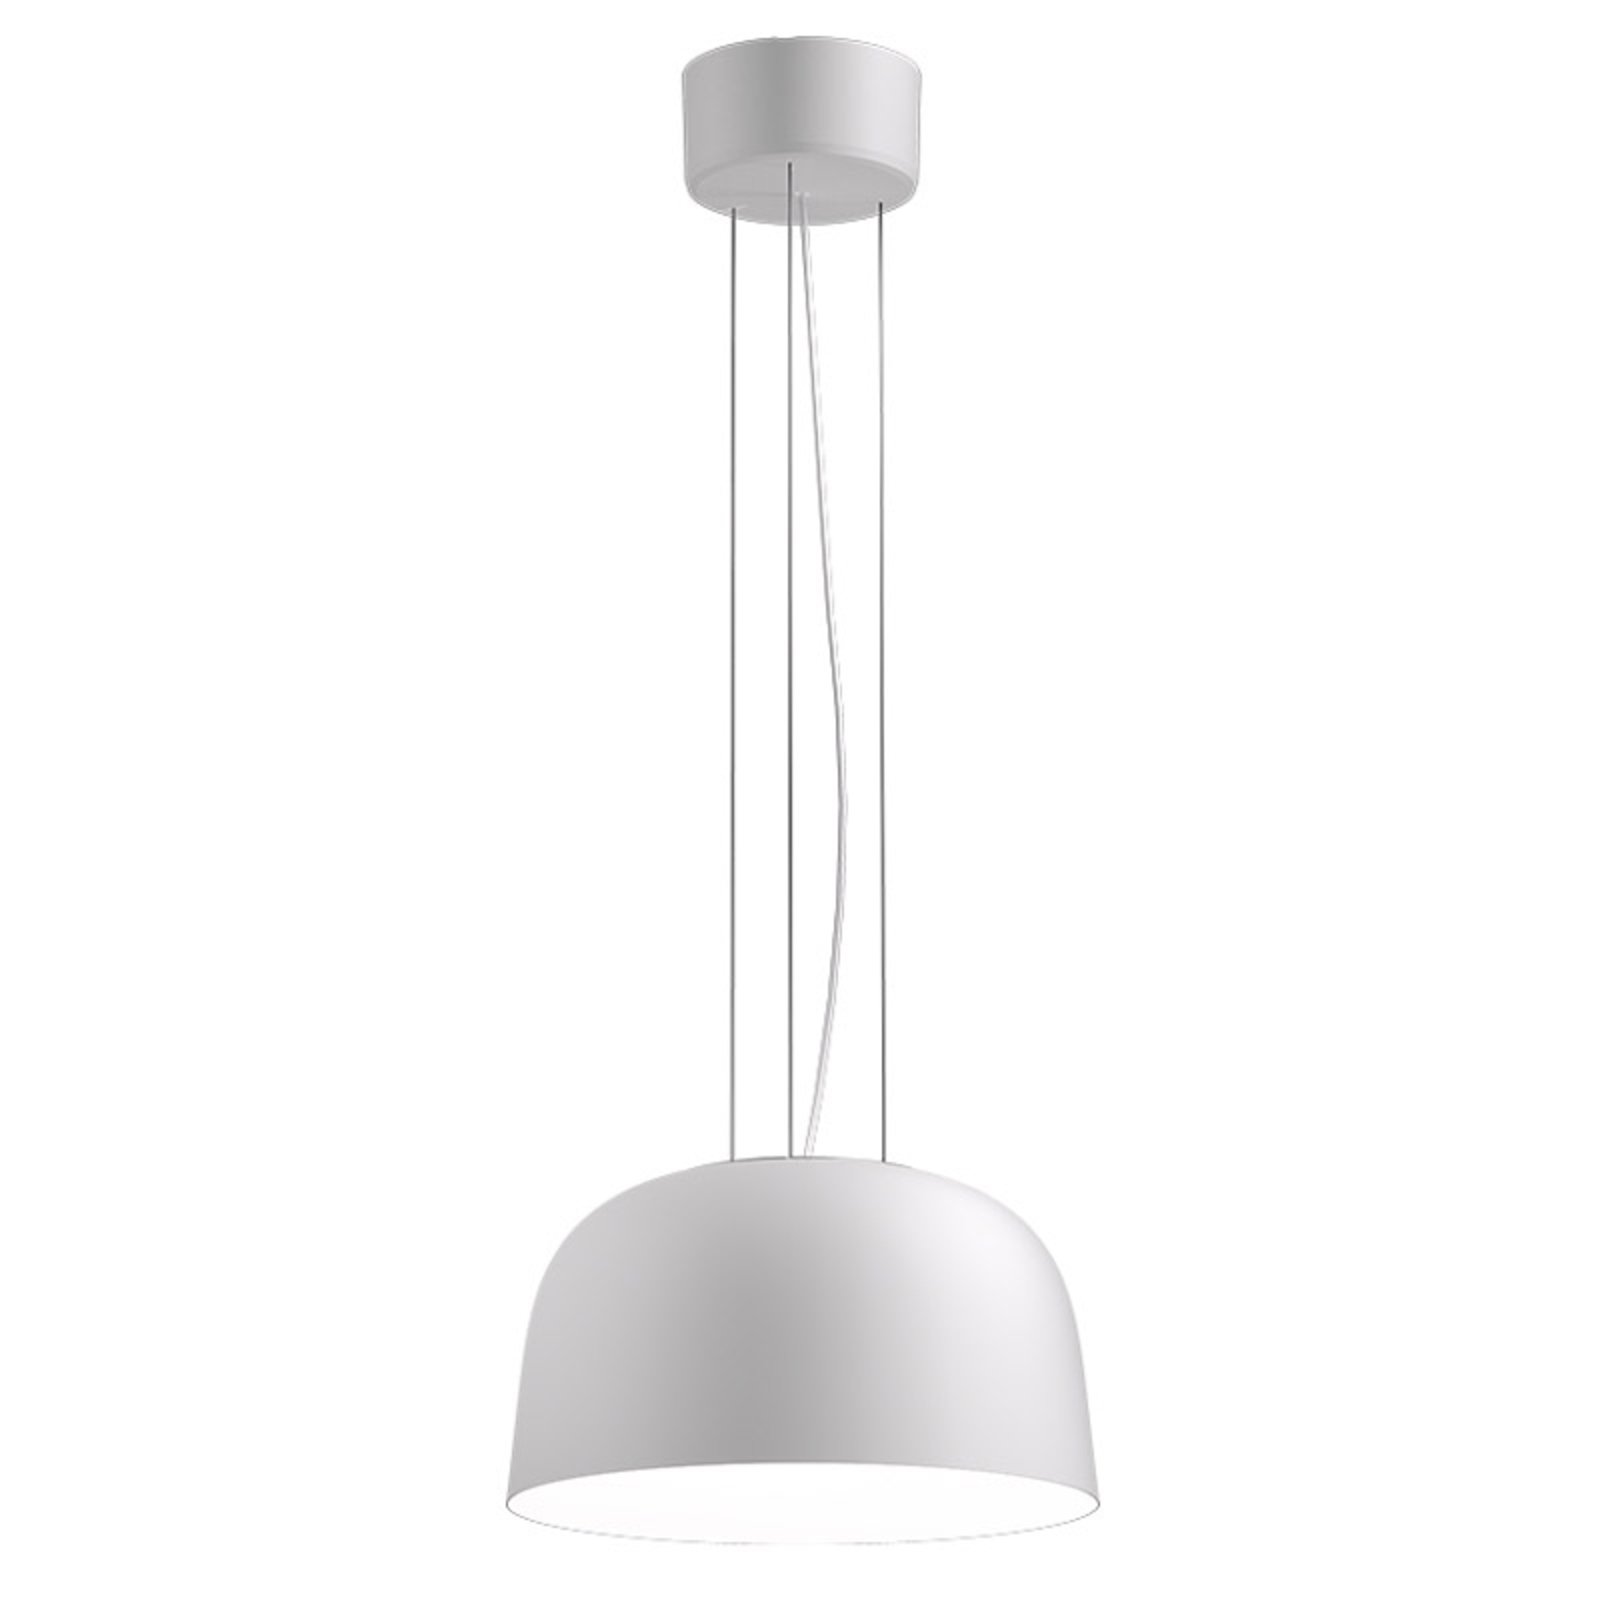 Suspensie cu LED Sva 840 Dali Ø 35,6cm alb